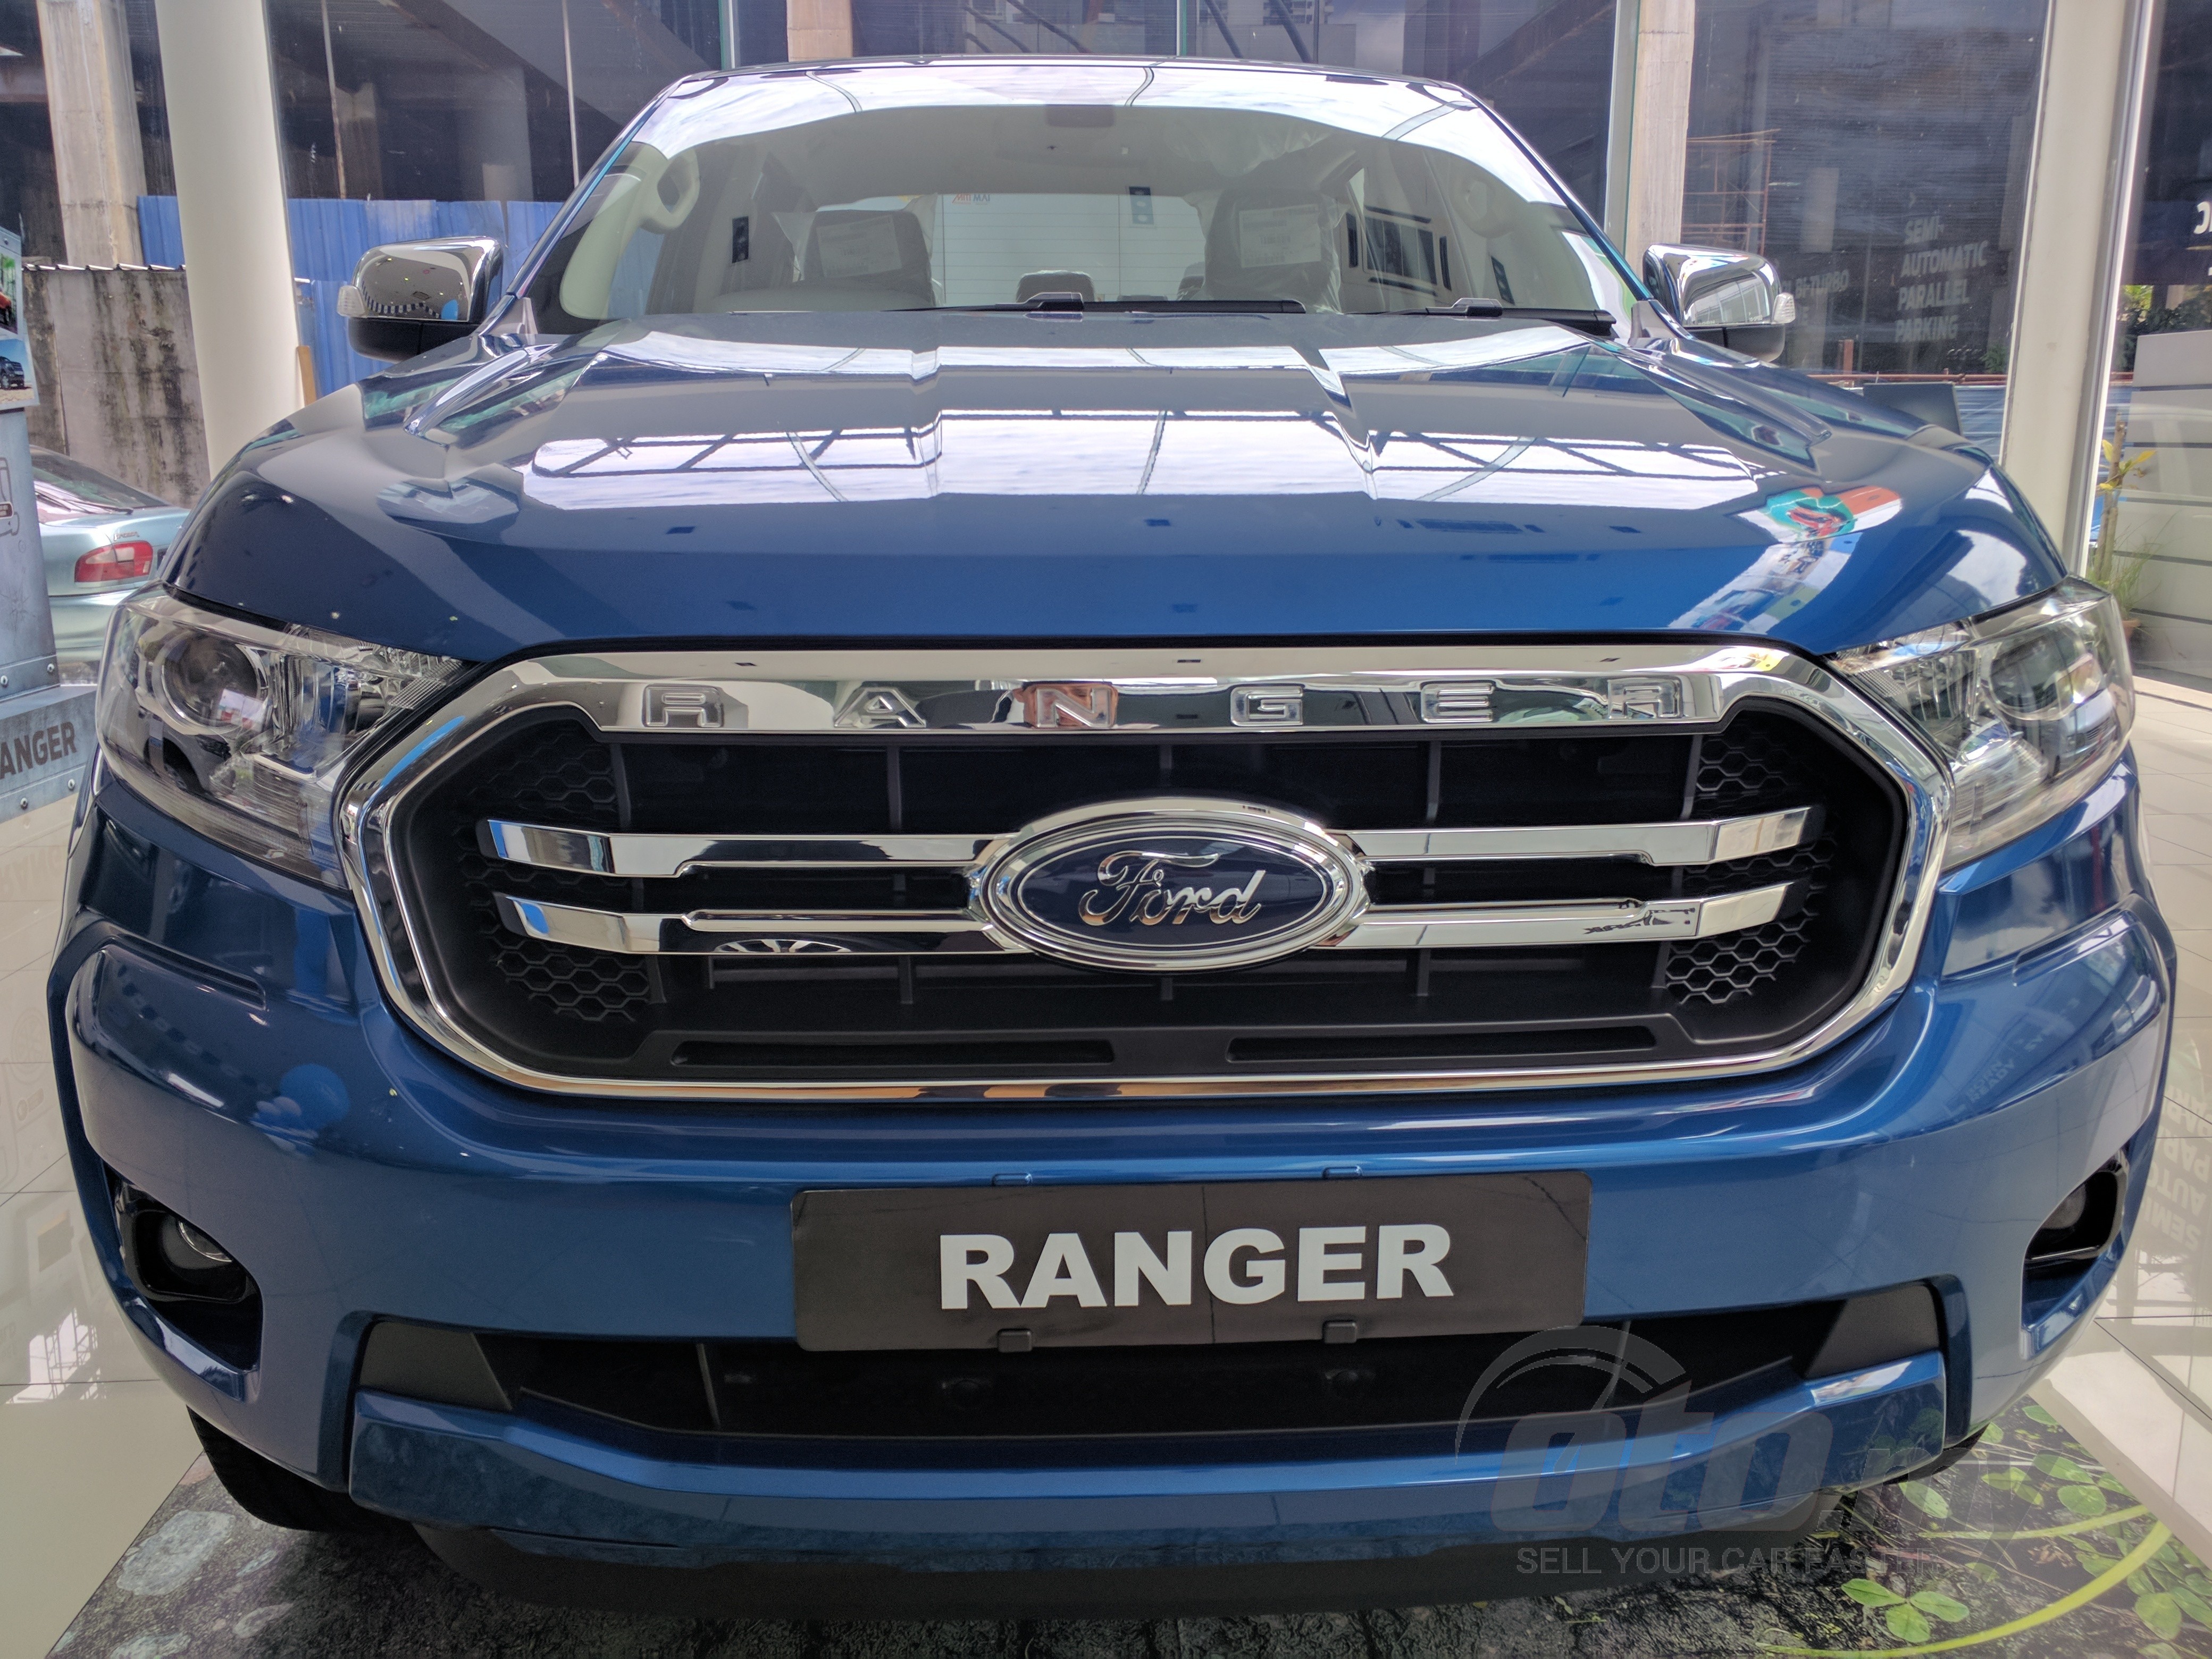 Ford Ranger modern 2018